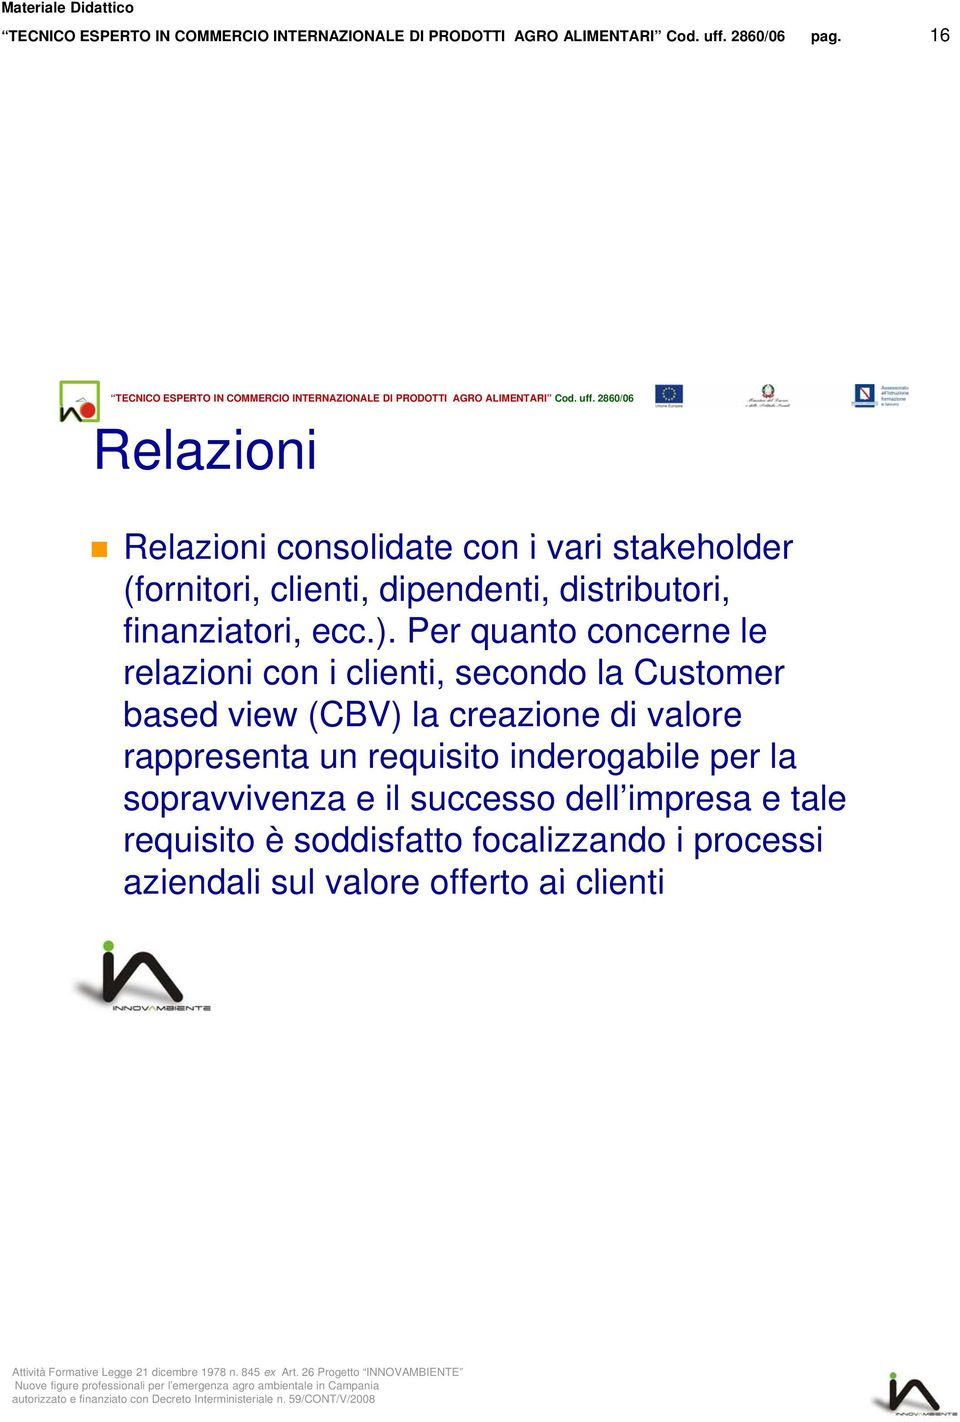 Per quanto concerne le relazioni con i clienti, secondo la Customer based view (CBV) la creazione di